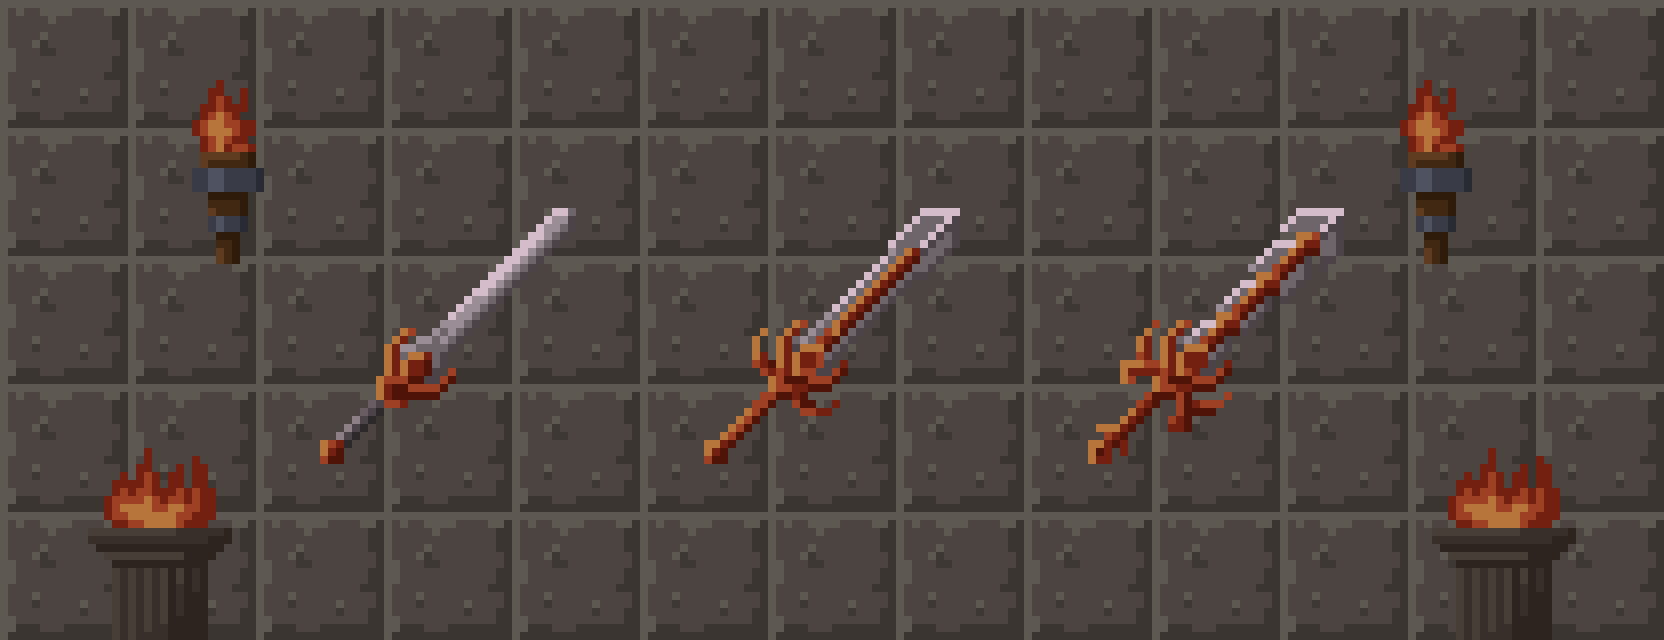 Evolving Swords (Pixel Art)